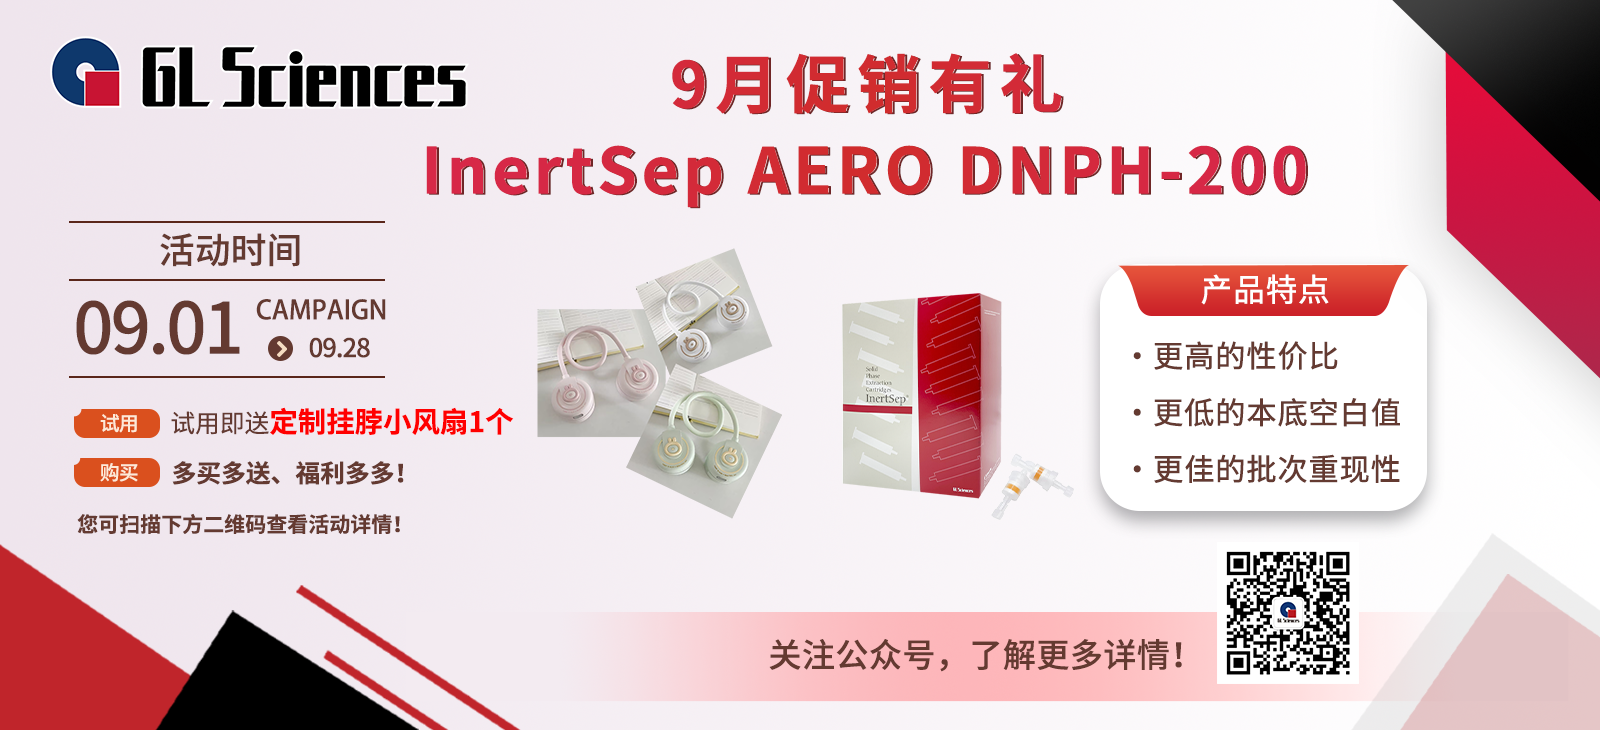 九月促销有礼 | GL Sciences InertSep AERO DNPH-200 促销活动